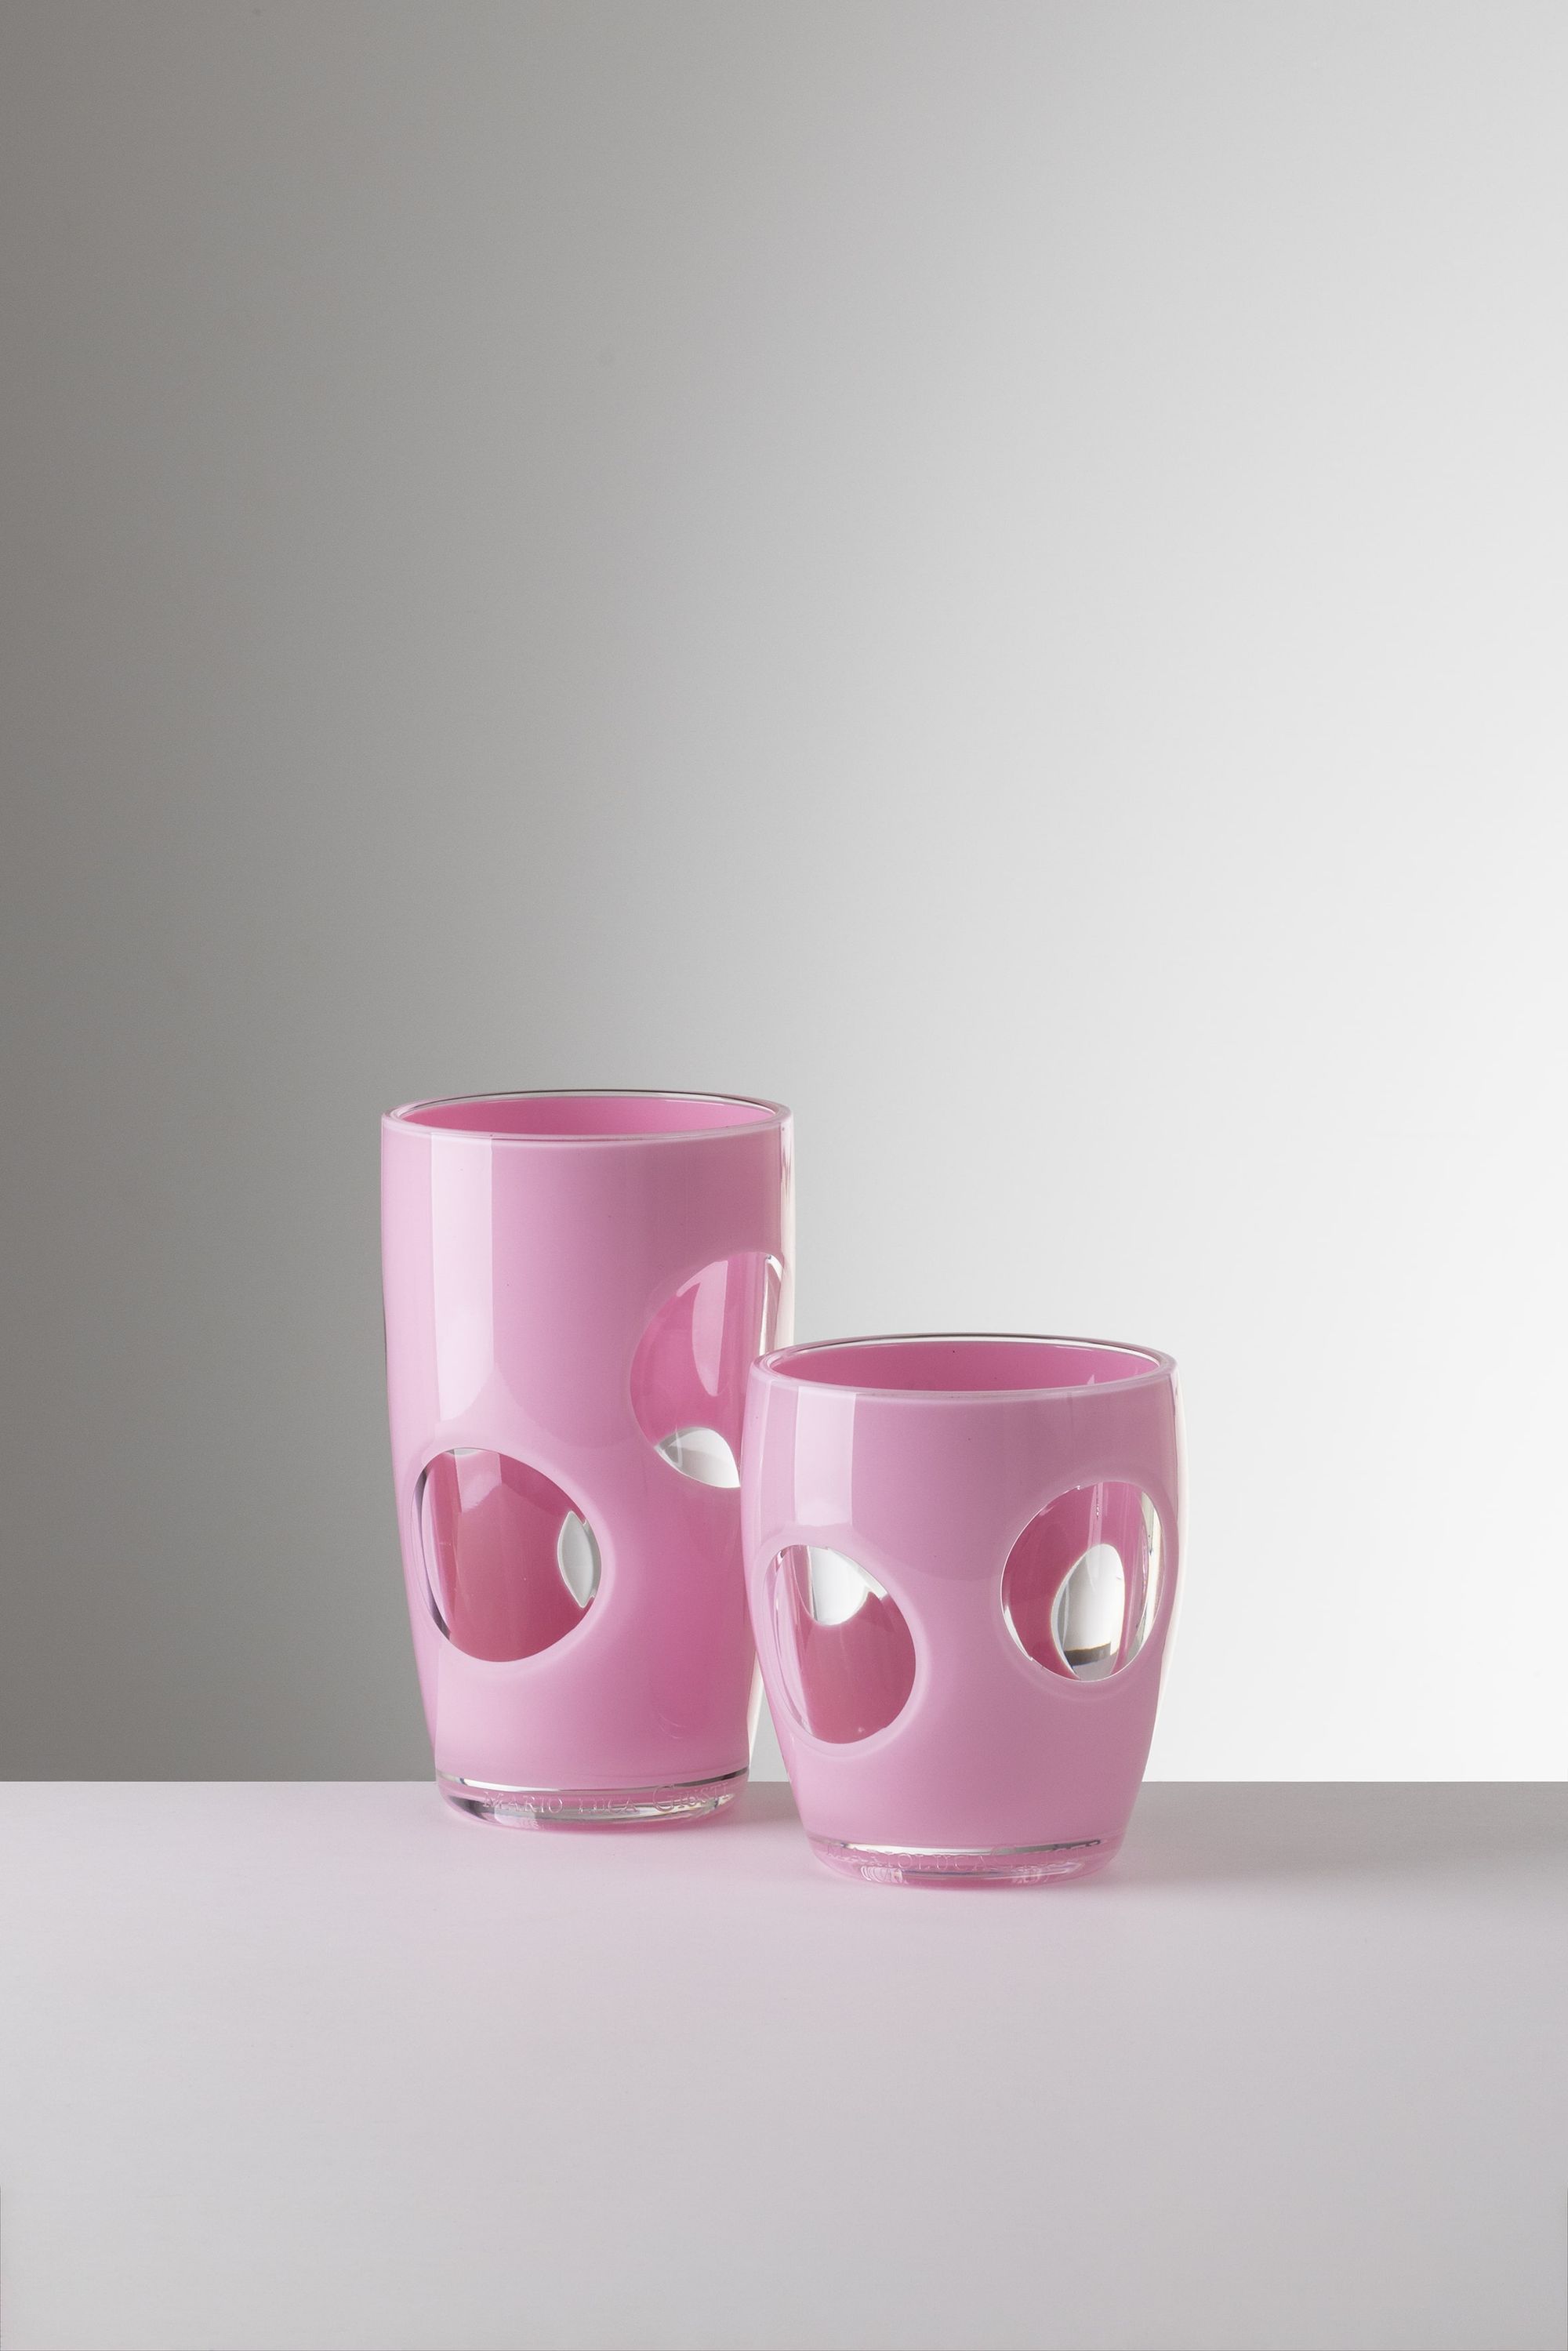 cristalería de diseño de mario luca giusti, vasos de color rosa, lila